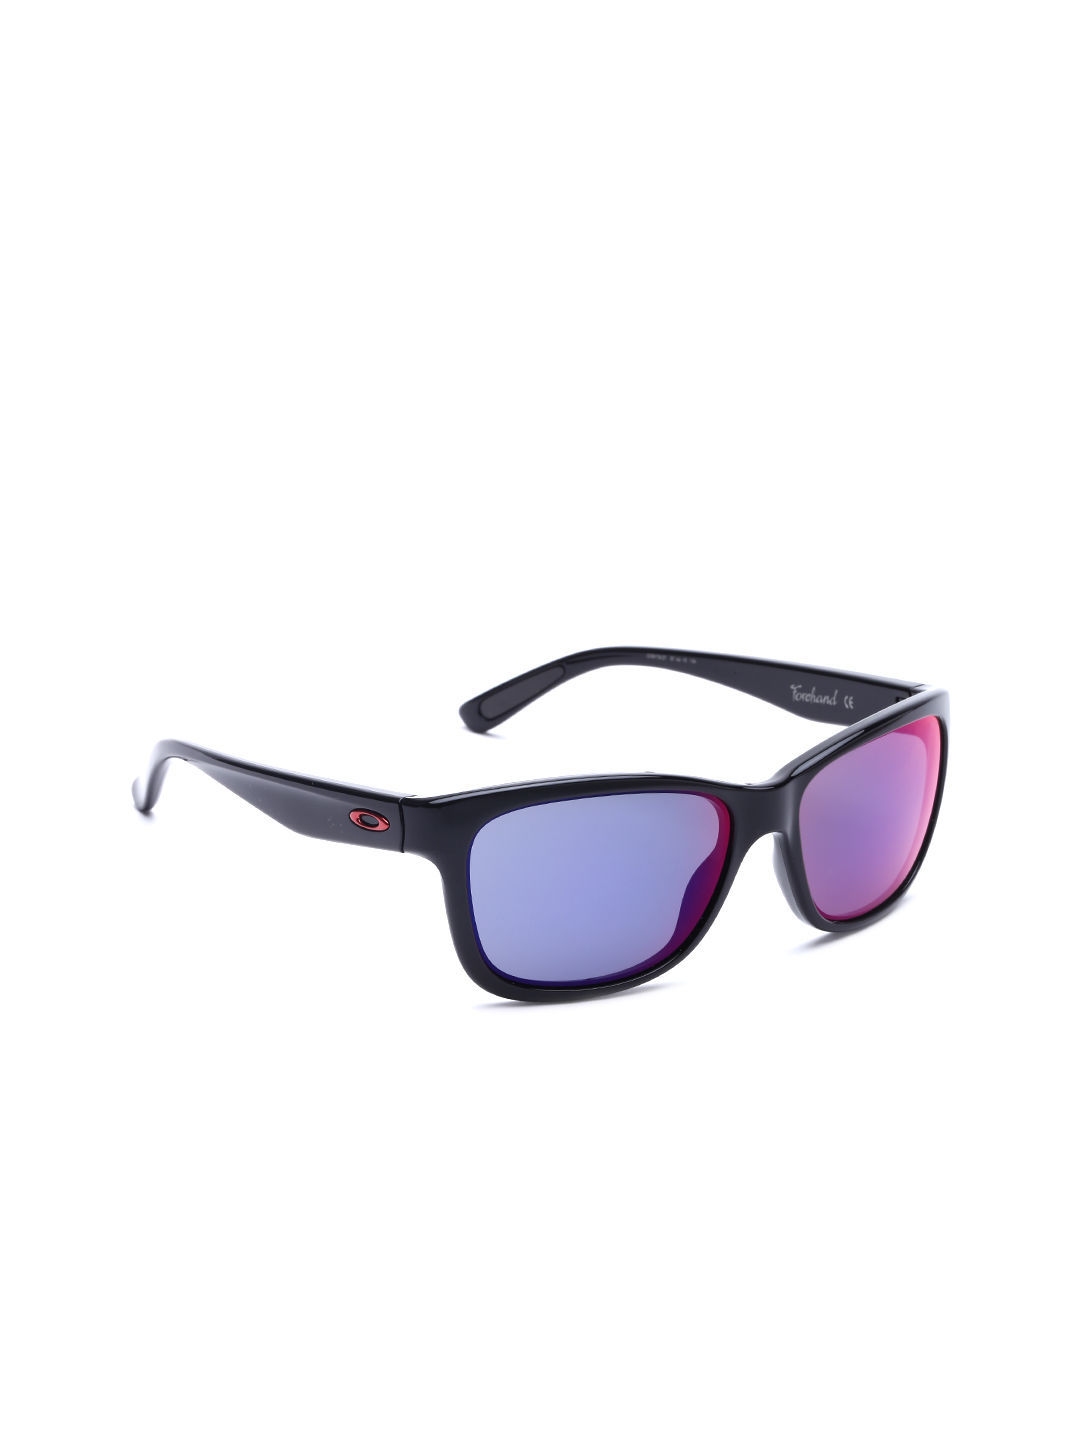 Buy OAKLEY Women Forehand Sunglasses 0OO9179 - Sunglasses for Women 698996  | Myntra